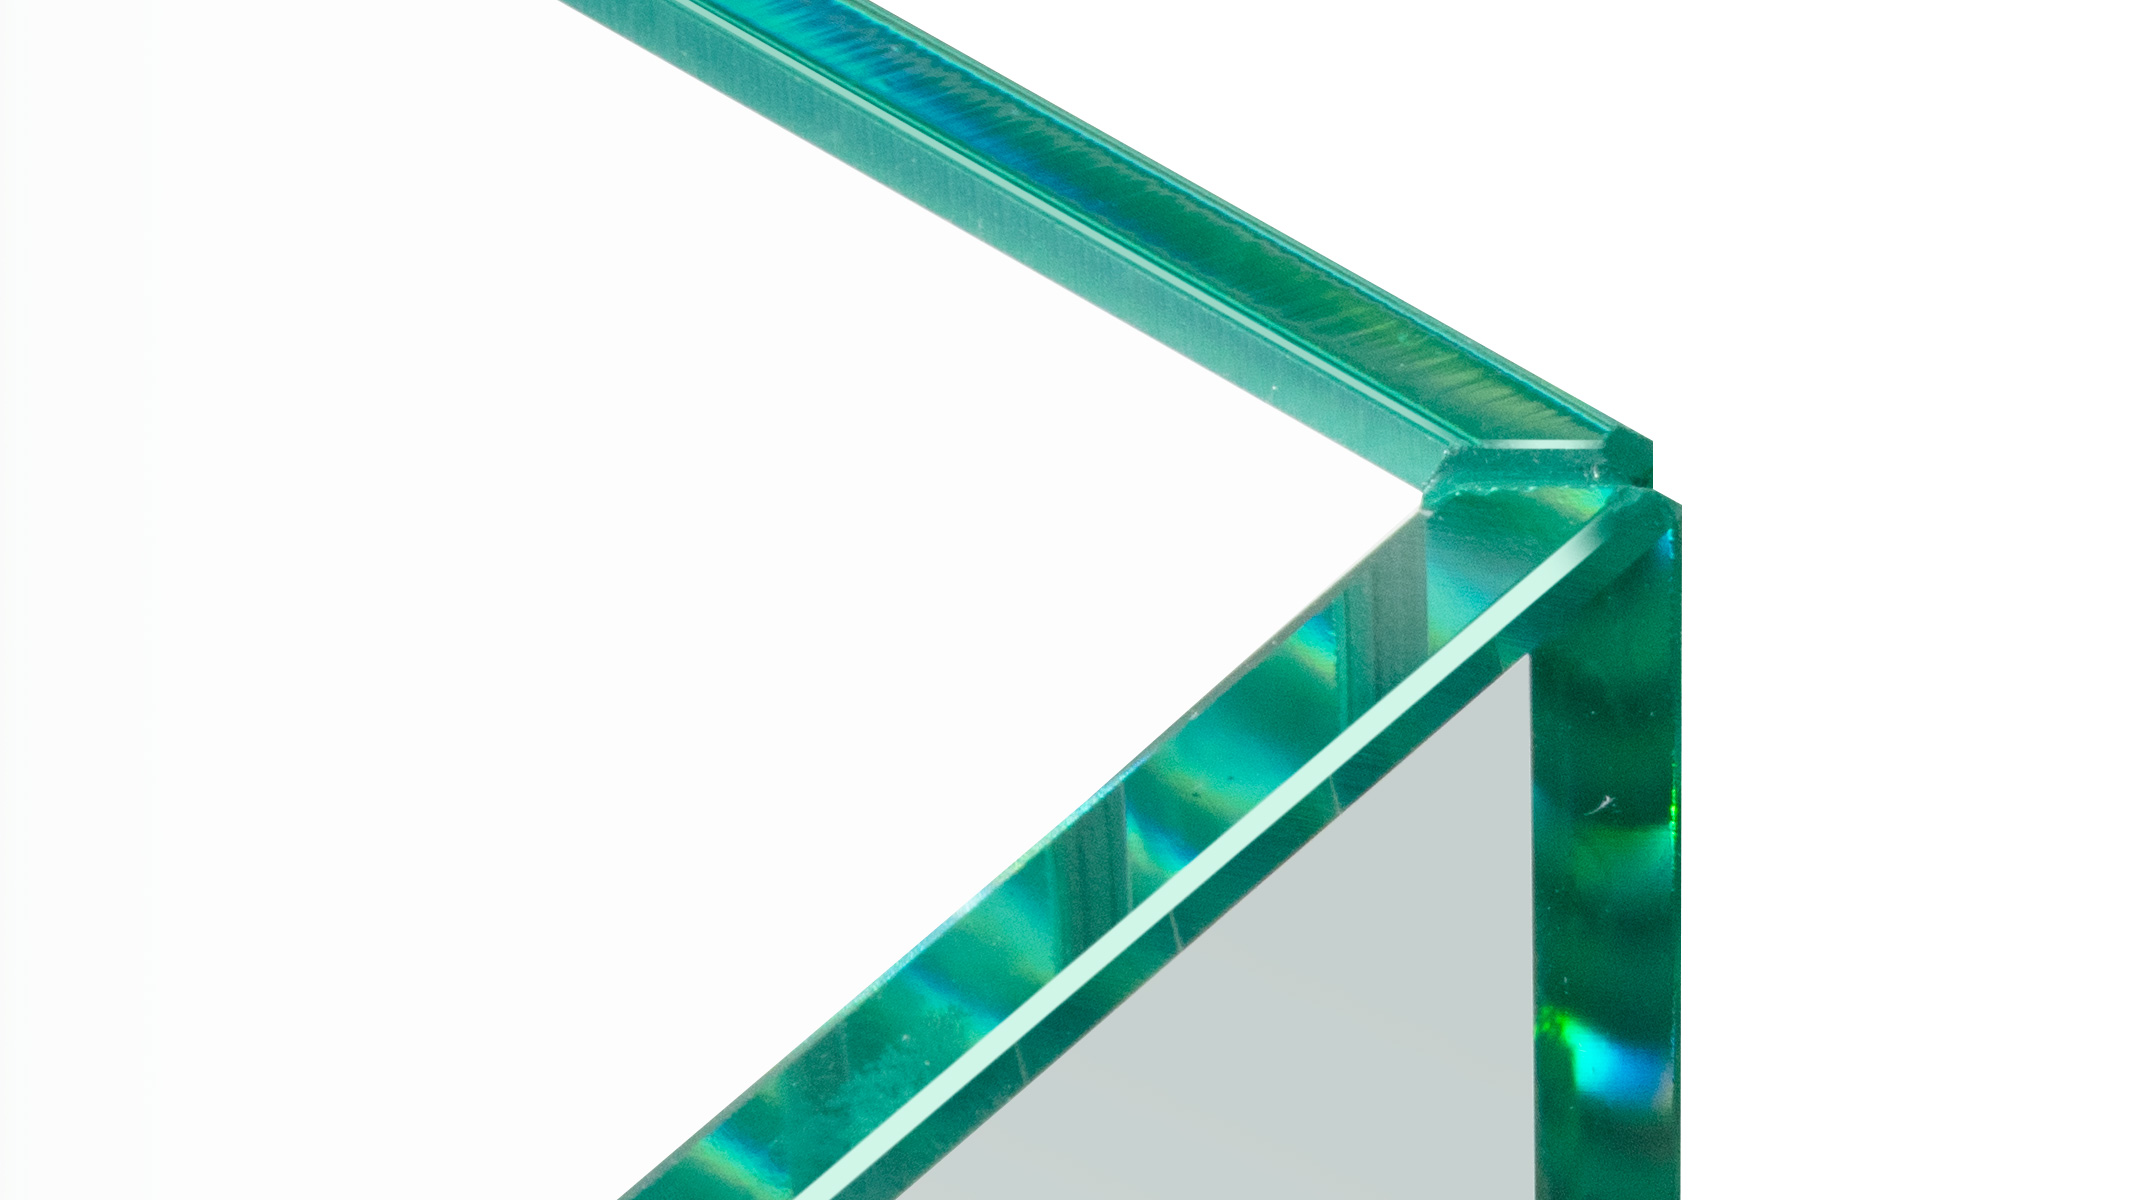 ESG Floatglas in U-Form, Höhe 30 cm, Stärke 6 mm, Kanten auf Gehrung UV verklebt, Kanten poliert,
Sonderausstattung für Ergolift Evolution 100 cm